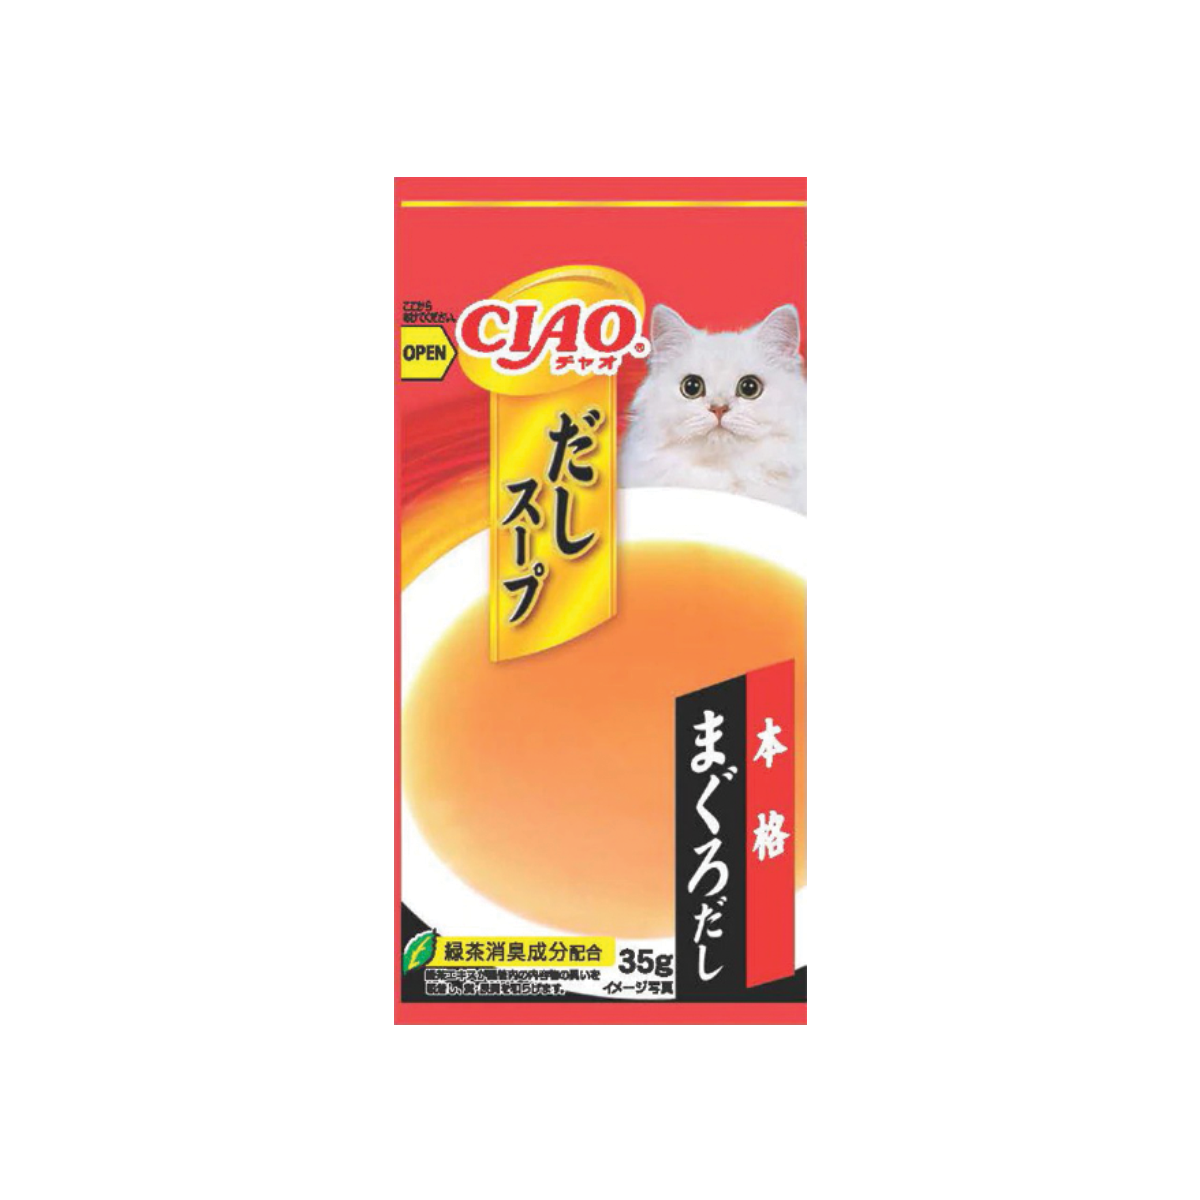 CIAO Dashi Soup Line Pouch Tuna Flavor เชาว์ ดาชิ ซุป ไลน์ เพาช์ รสทูน่า ขนาด 35 กรัม (4 ซอง)